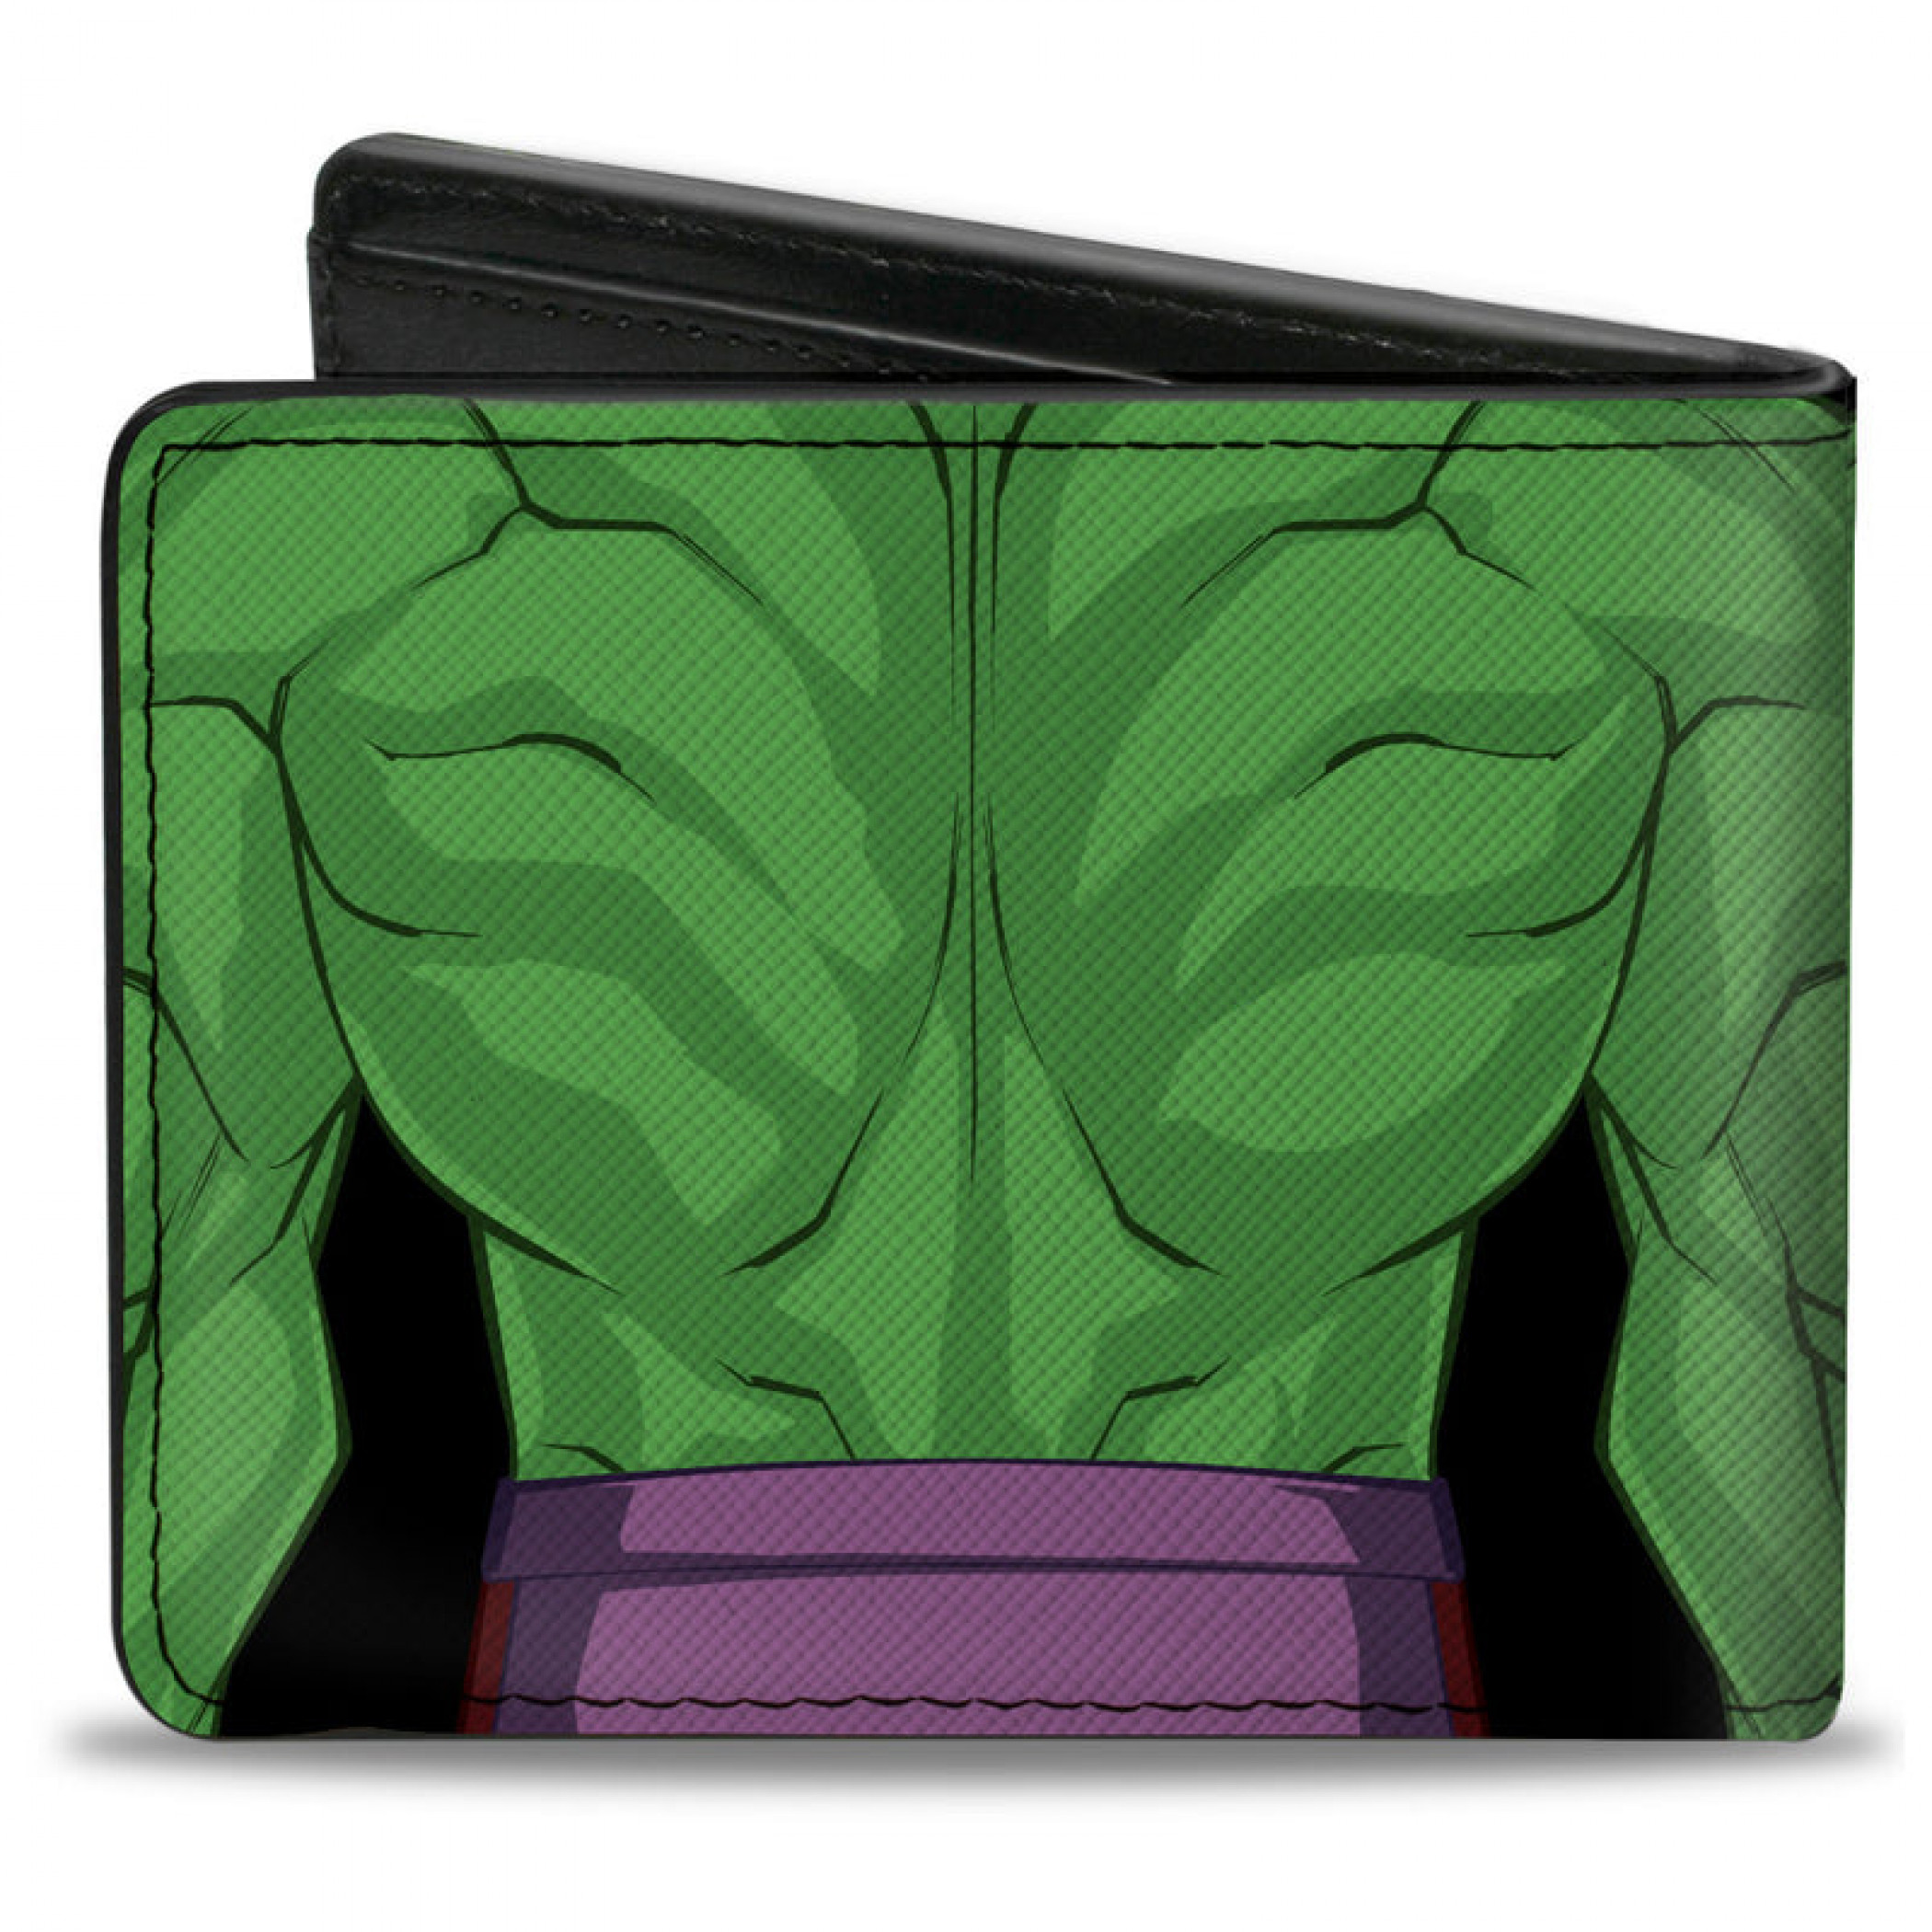 The Incredible Hulk Character Close-Up Cosplay Bi-Fold Wallet